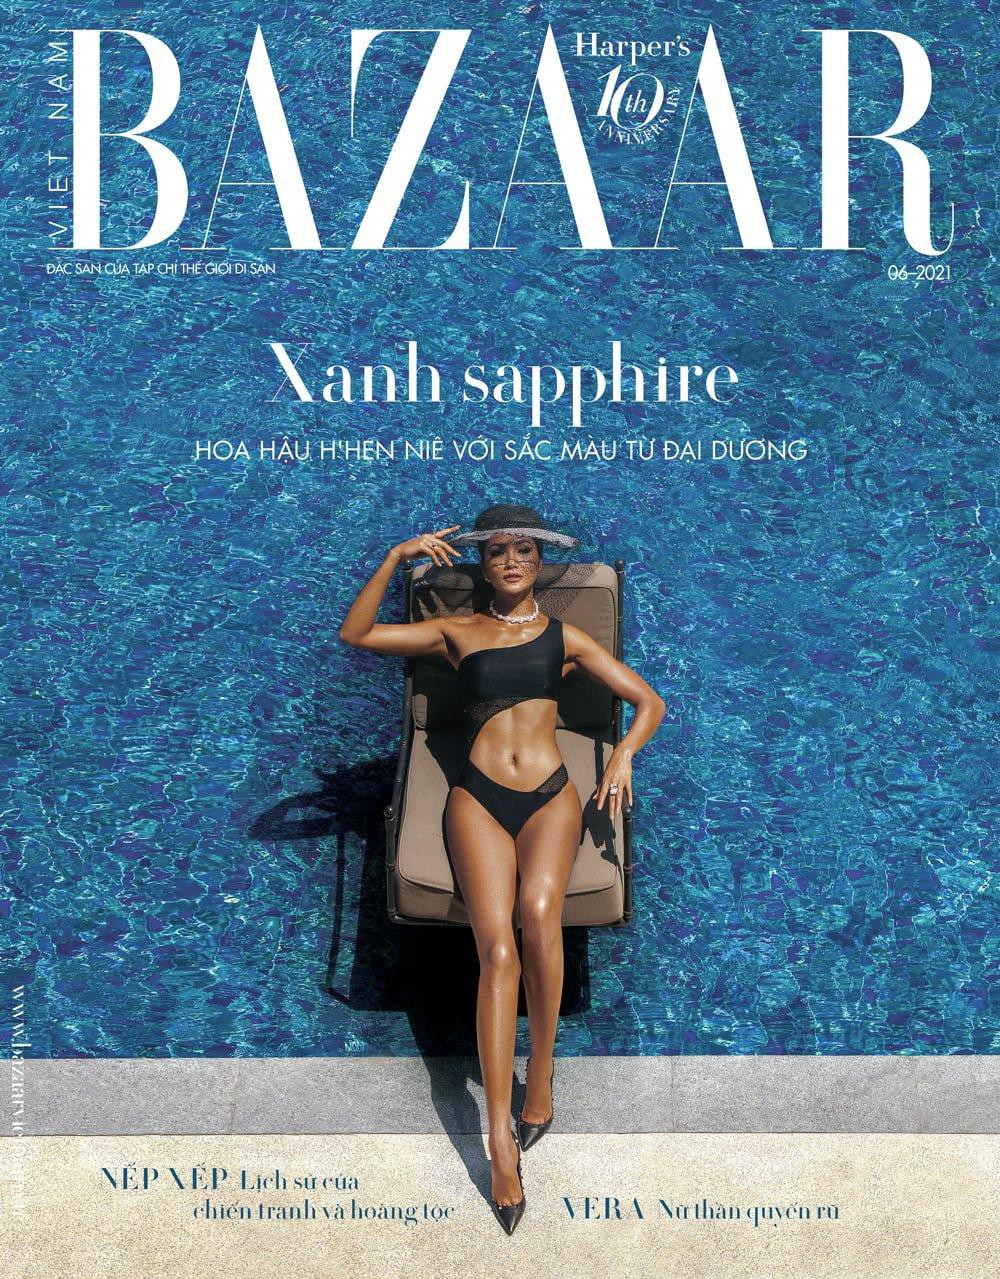 Hoa hậu hhen niê mặc đồ bơi đẹp như siêu mẫu quốc tế trên bìa harpers bazaar - 2